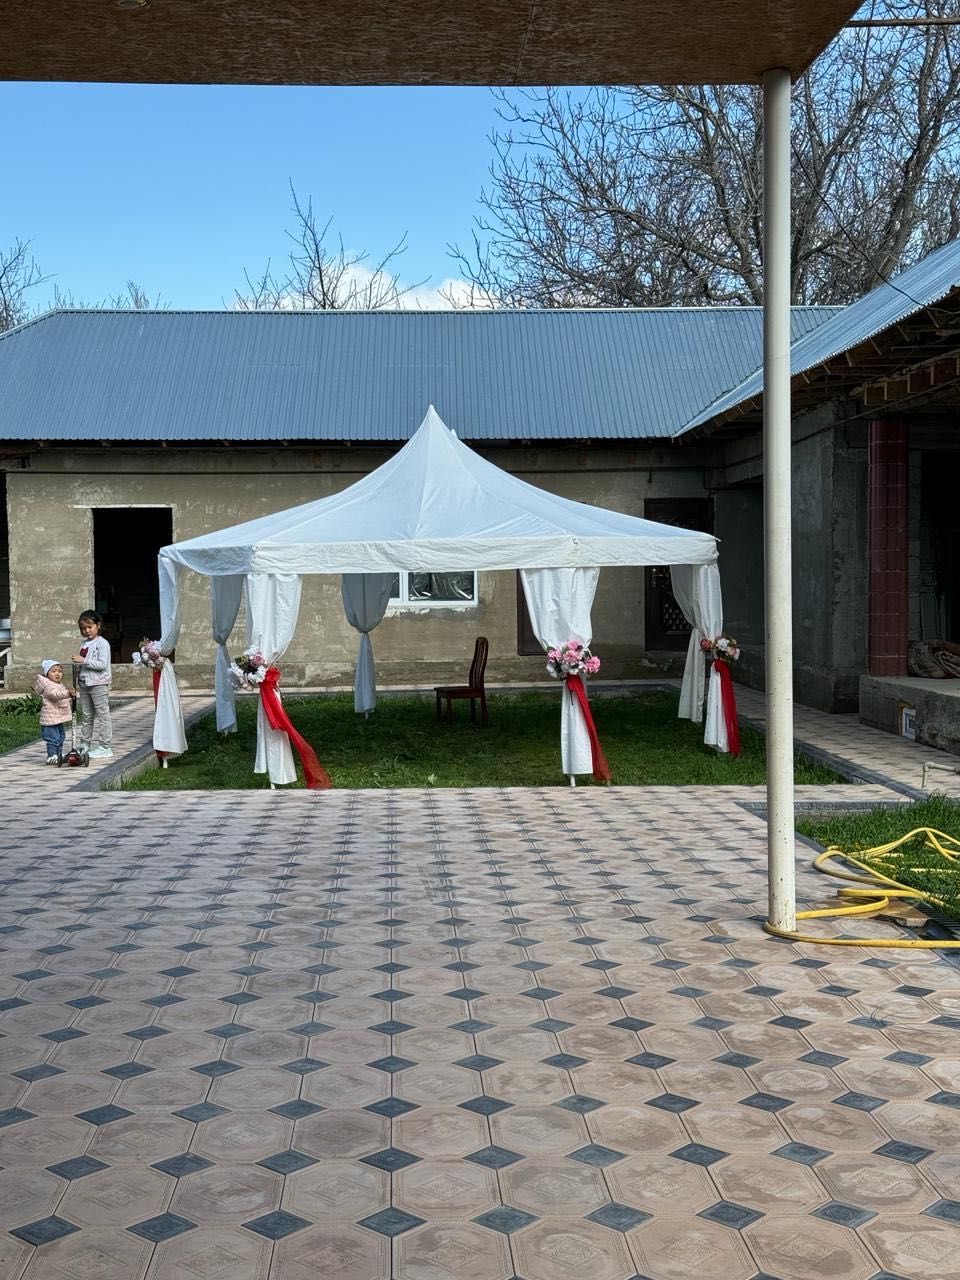 Аренда Шартер Палатка Зонтик в Шымкенте Низкая Цена Есть Доставка